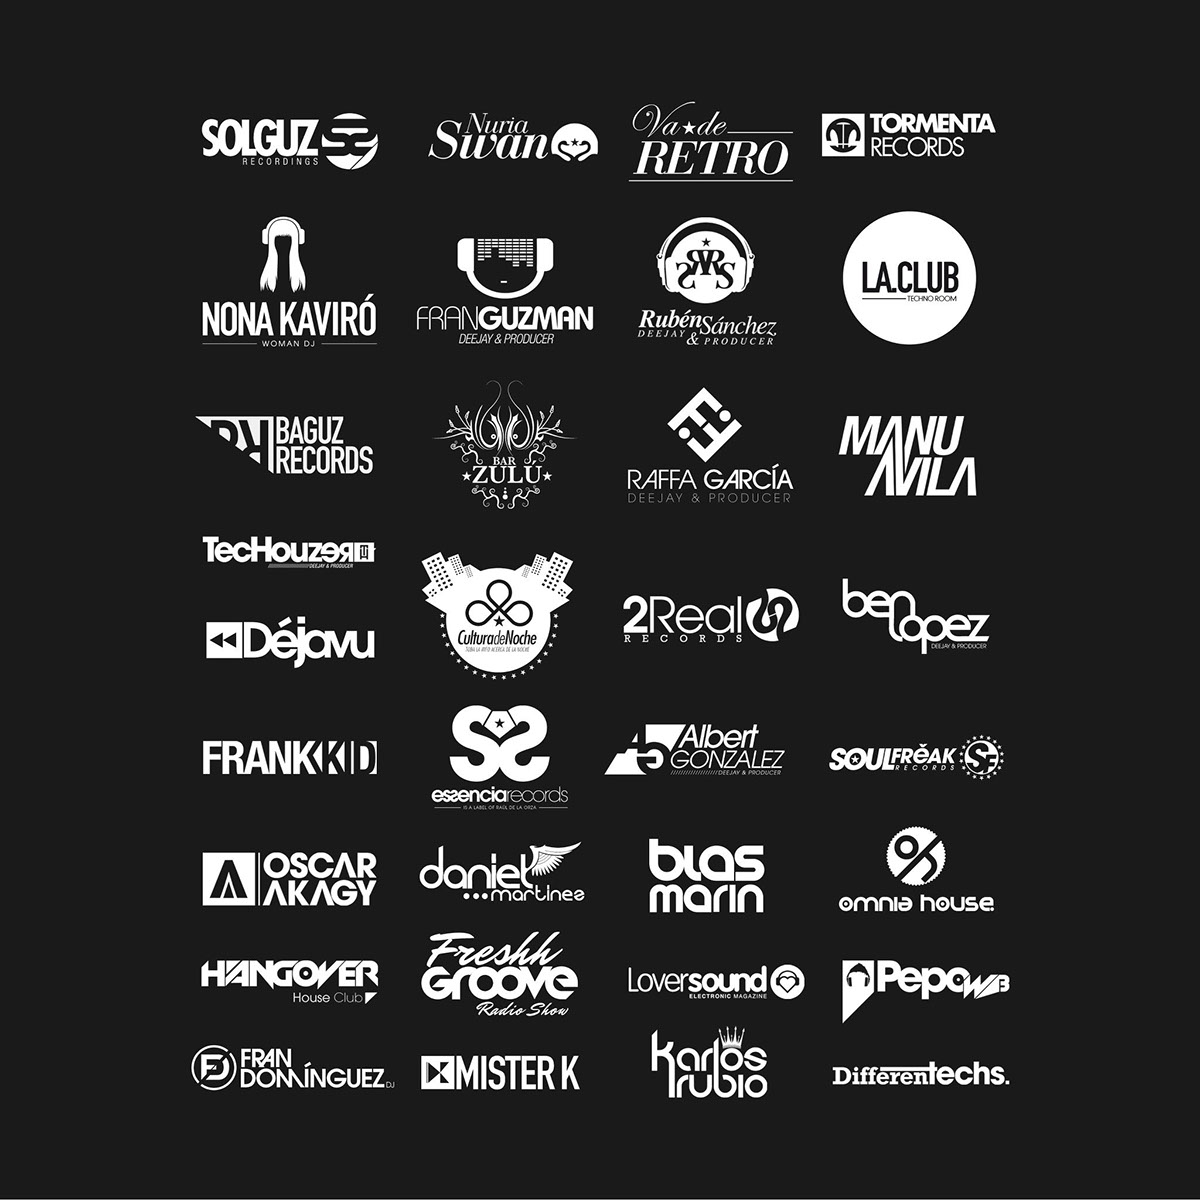 music logos musica deejay dj sound Records recording producer logos logo dj logo Productor clubbing electro tech